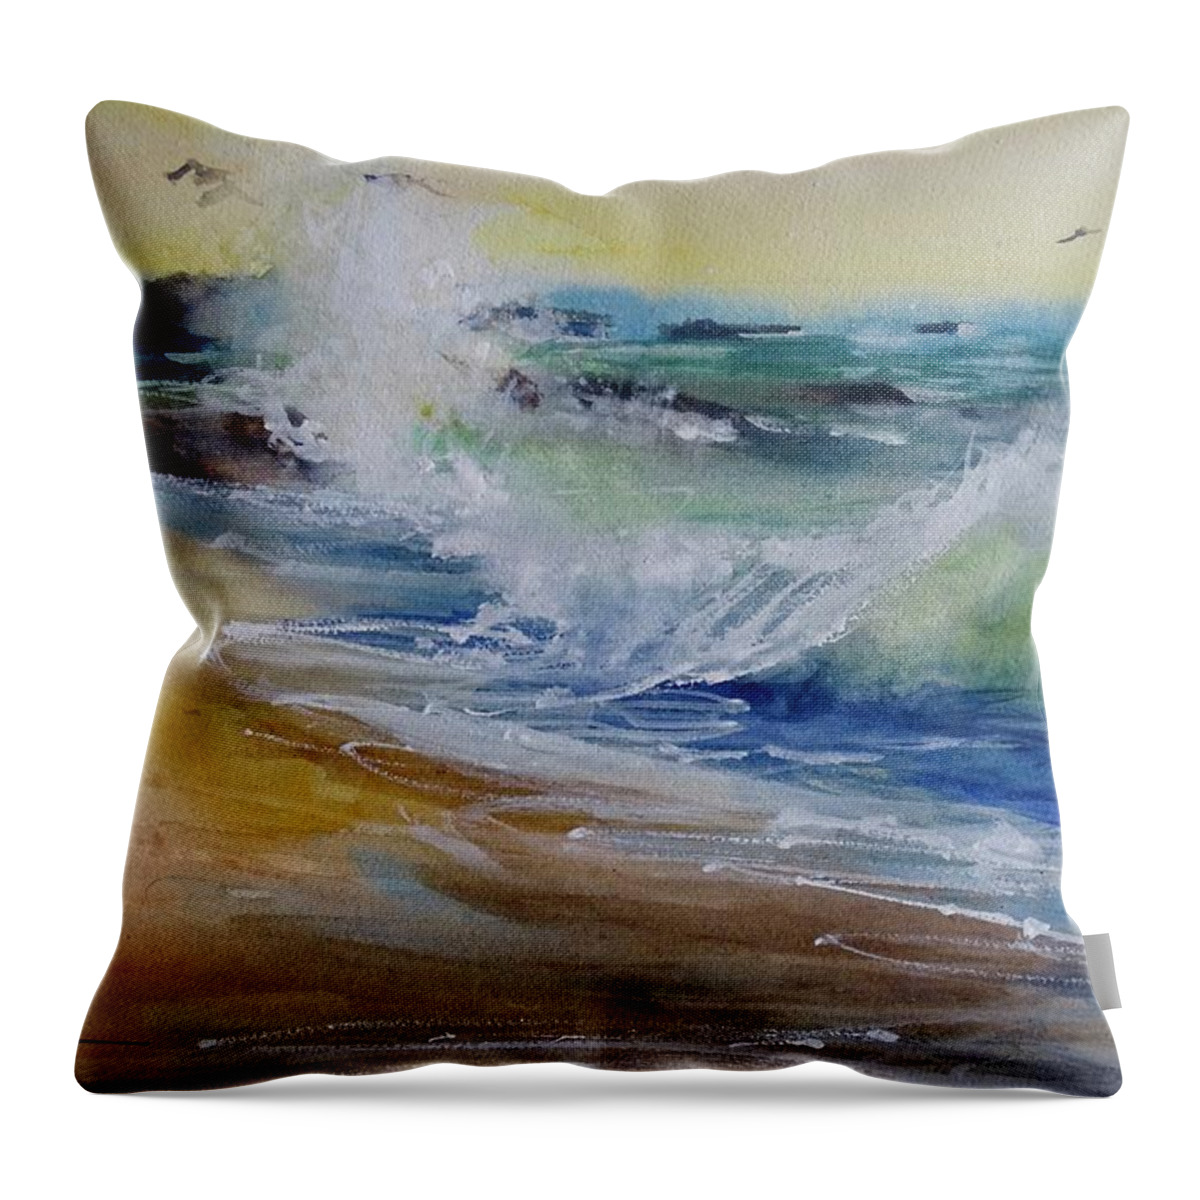 Laguna Beach Throw Pillow featuring the painting Laguna Beach Wave South View by Sandra Strohschein